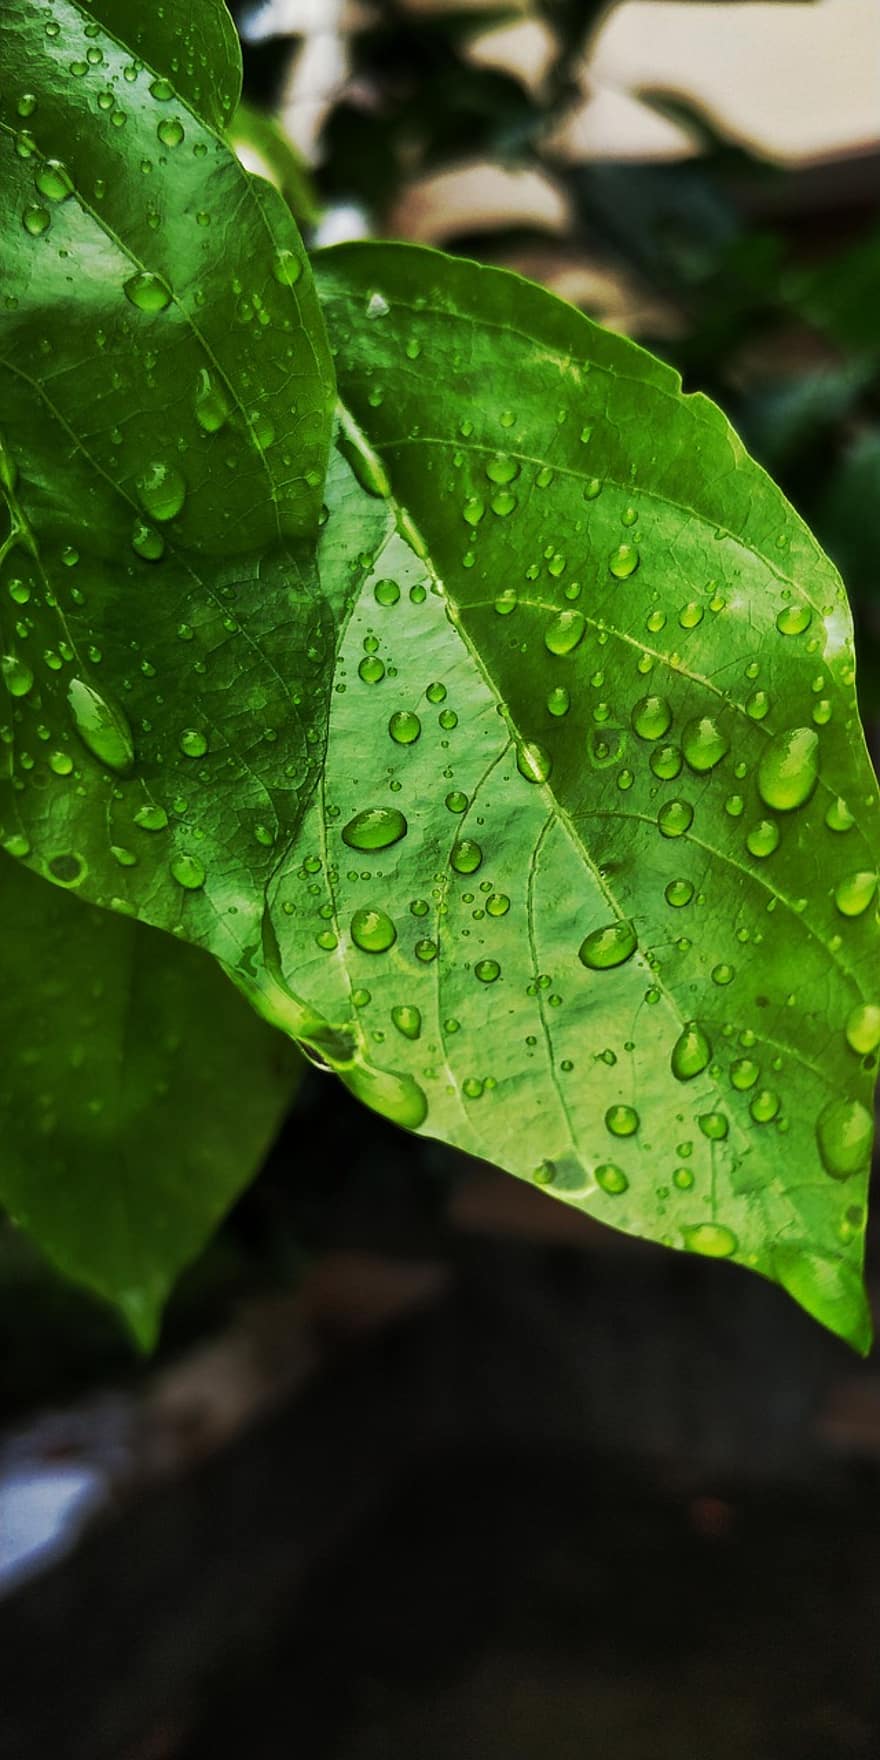 regn, blad, grønn, natur, anlegg, blader, dugg, vann, våt, regndråpe, vår